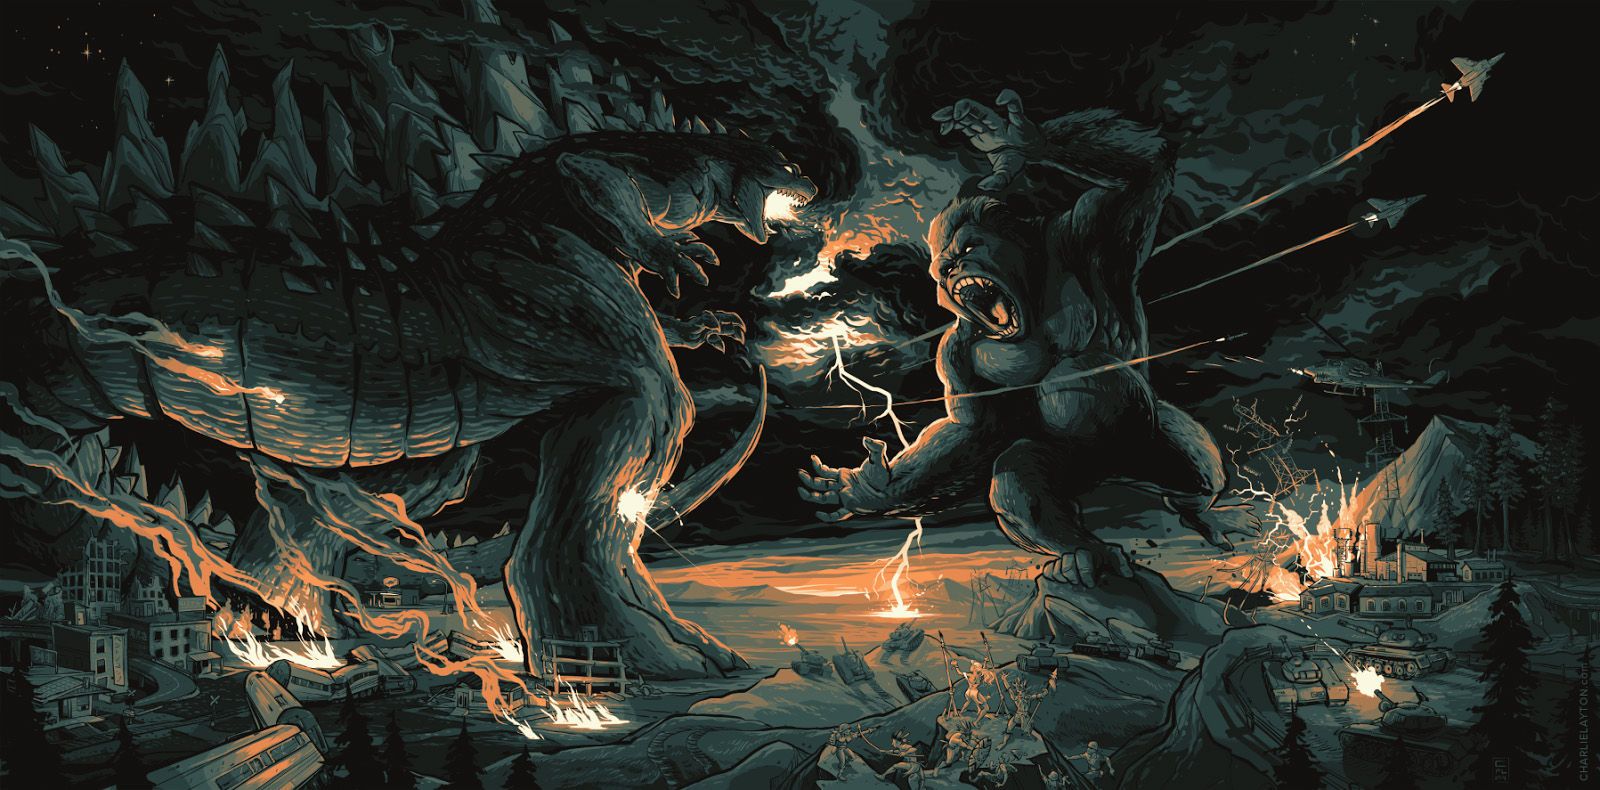 Godzilla vs King Kong by Charlie Layton